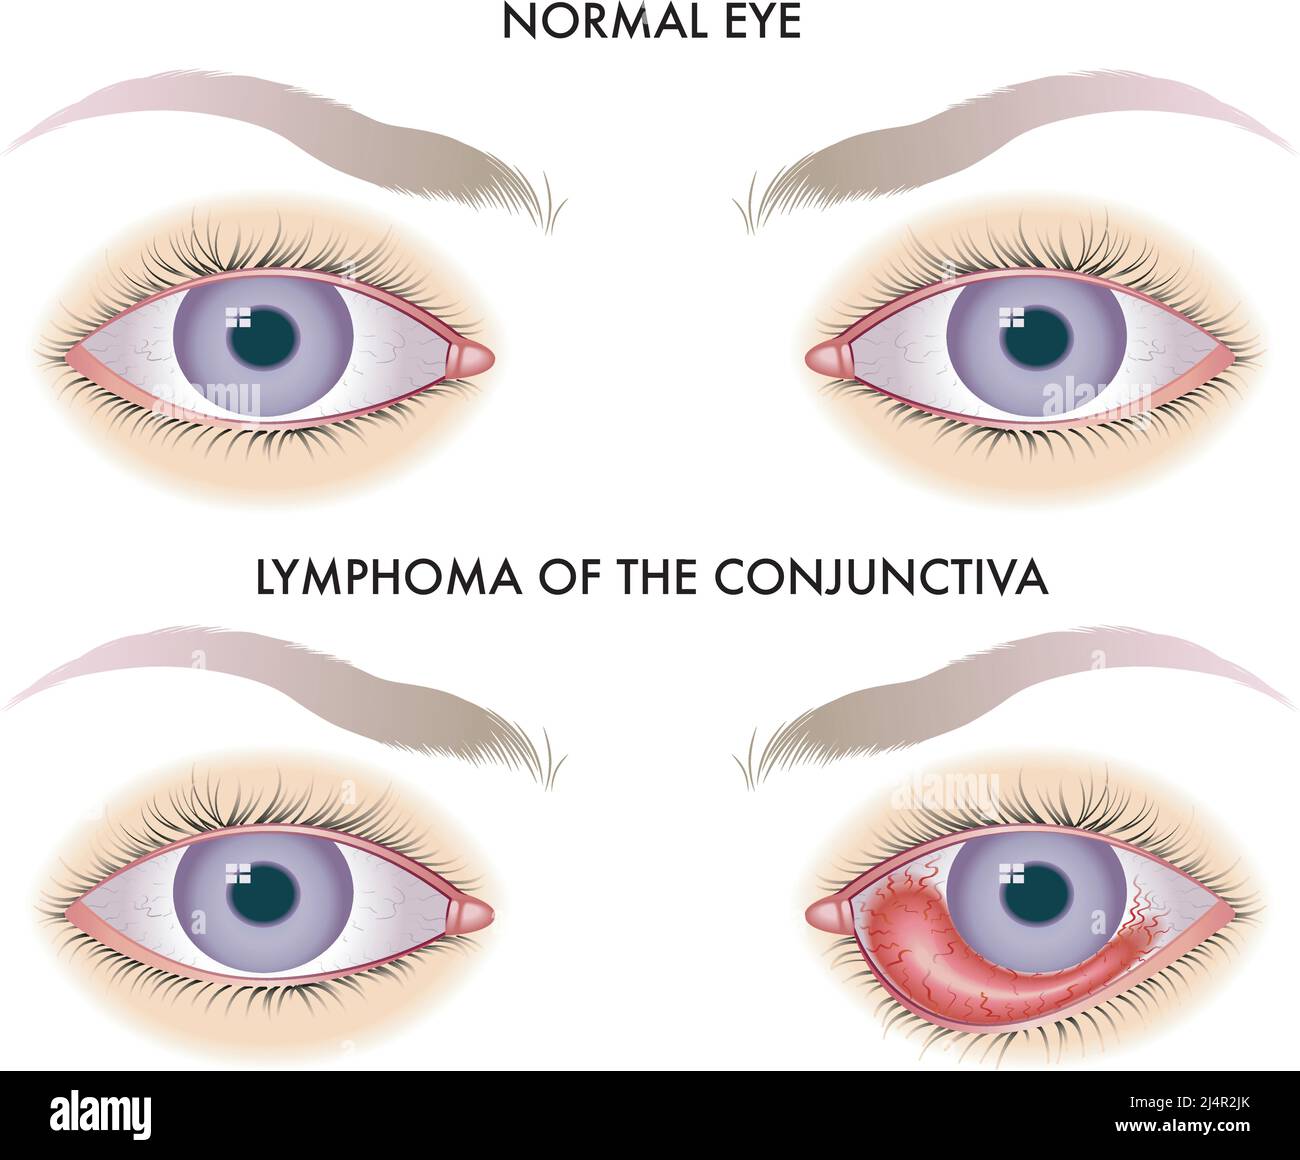 L'illustration médicale compare un œil sain à un œil affecté par un lymphome de la conjonctive. Illustration de Vecteur